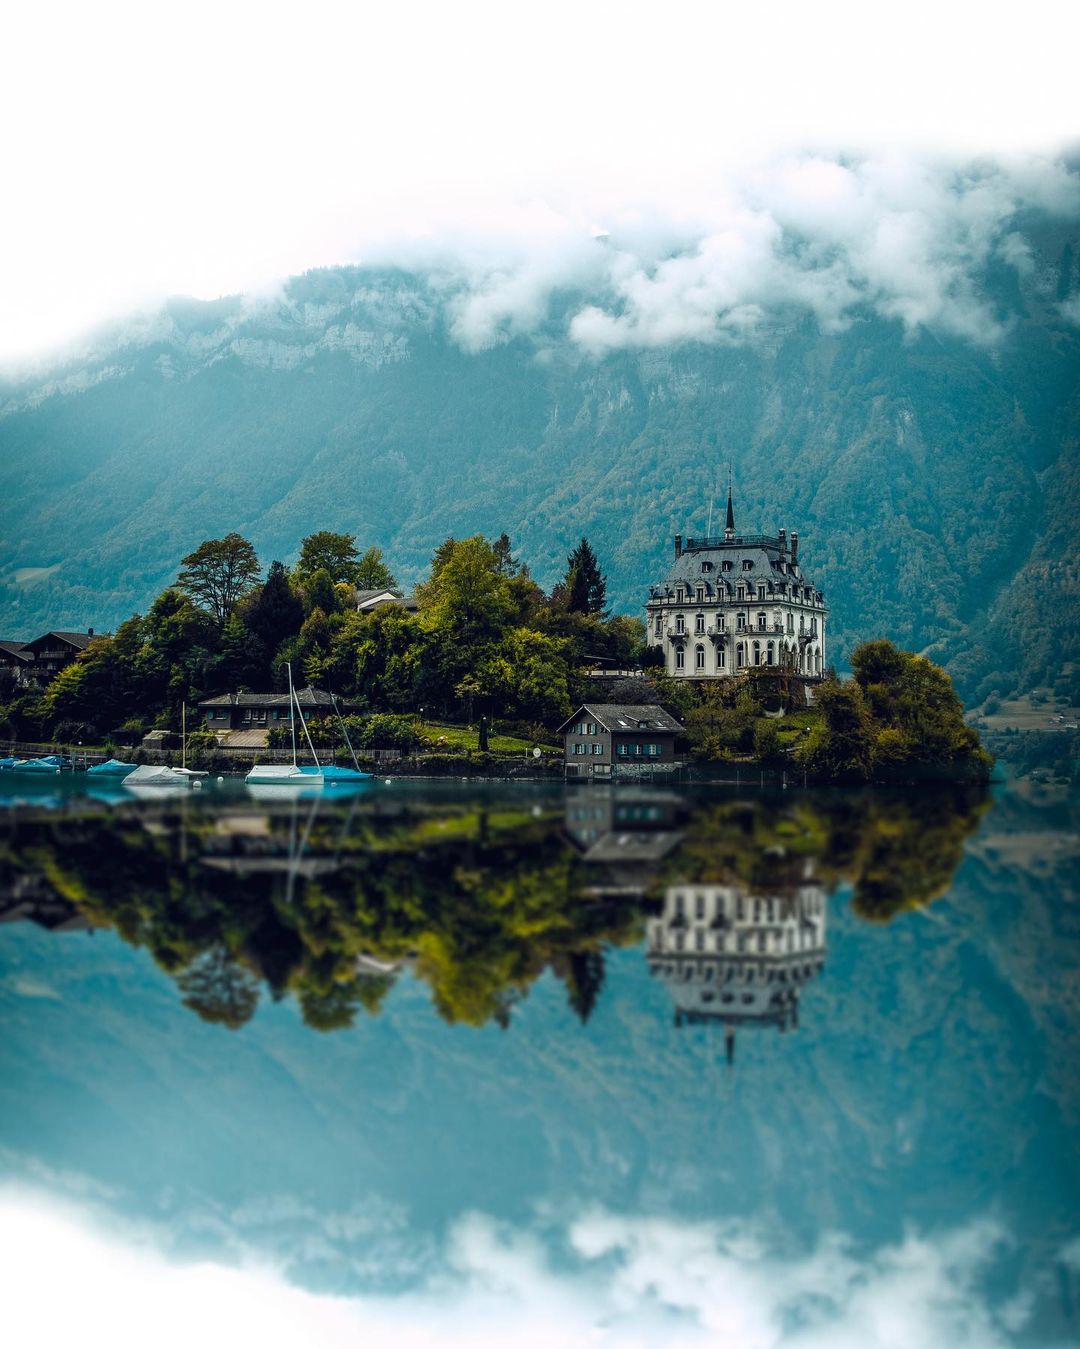 Vùng vịnh thu nhỏ Thuỵ Sĩ: Những ngôi nhà cổ xinh đẹp bên bờ biển xanh thẳm, nắm giữ một lịch sử và văn hóa phong phú của người dân Thuỵ Sĩ. Điểm đến này sẽ khiến bạn bất ngờ những cảm xúc tuyệt vời như hoà mình vào cảnh sắc tuyệt đẹp, tìm hiểu về văn hóa xứ người và thư giãn trong không gian yên bình.